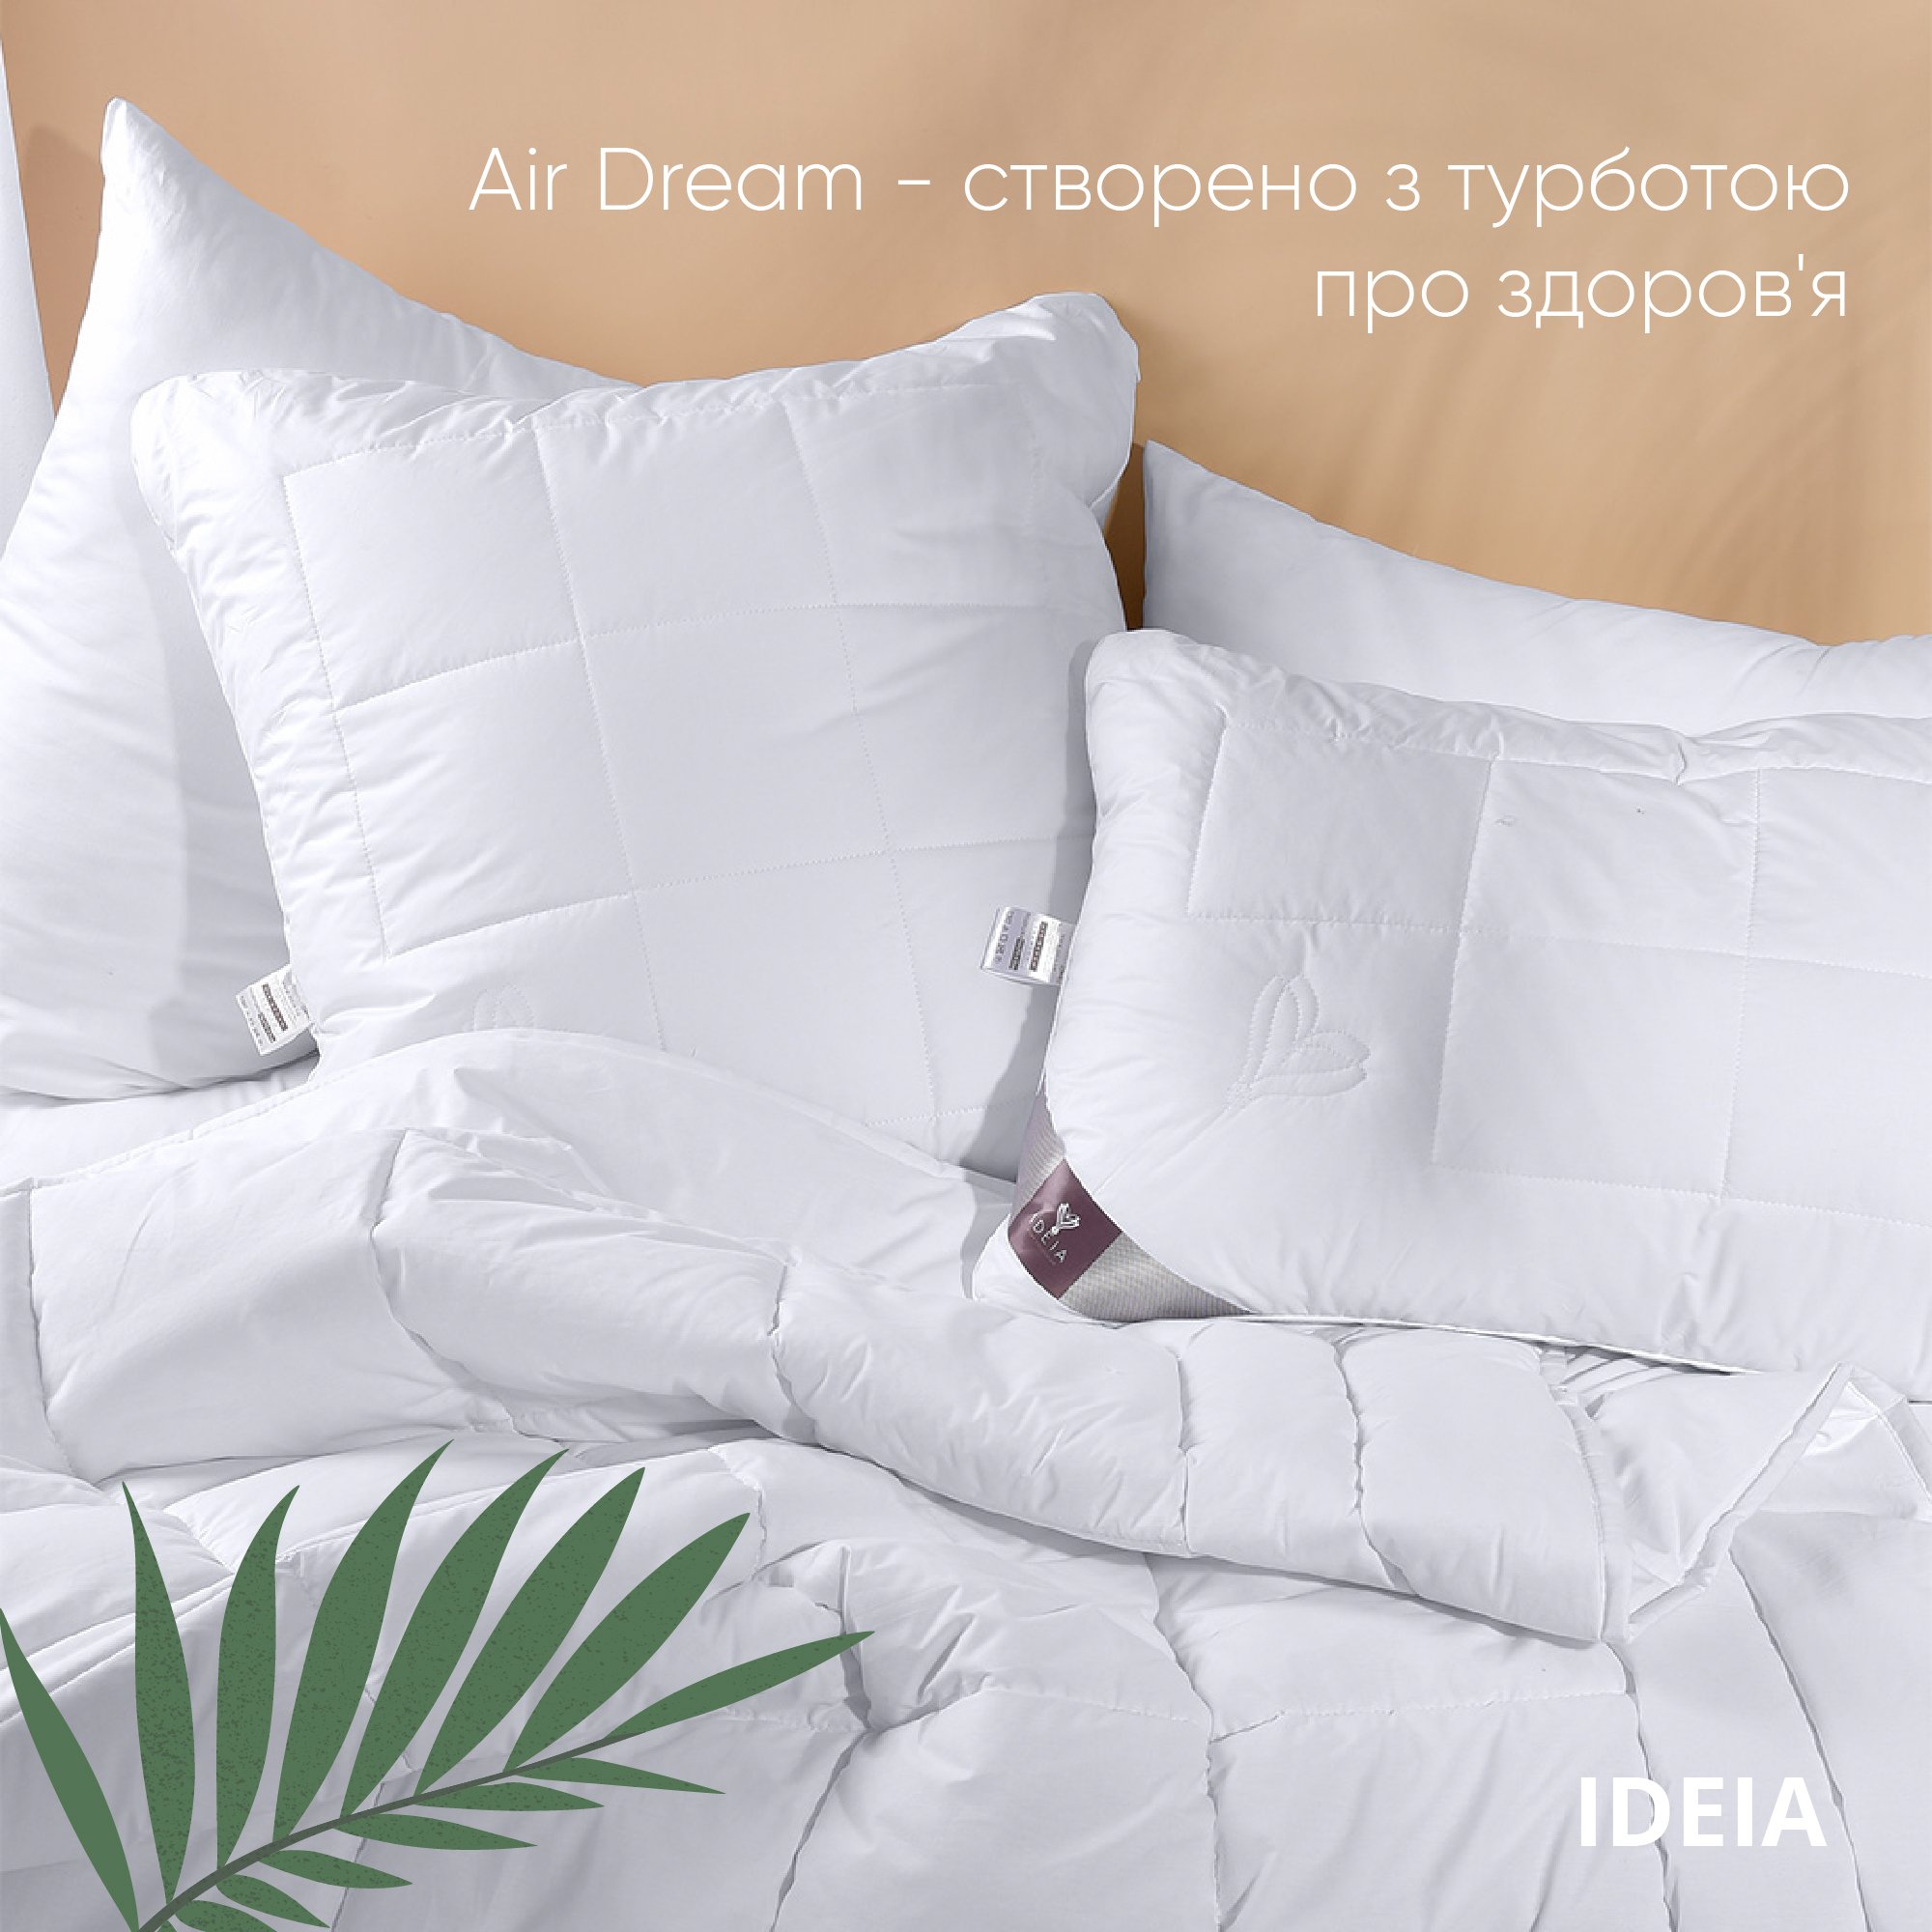 Ковдра Ideia Air Dream Premium зимова, 215х155, білий (8-11694) - фото 6